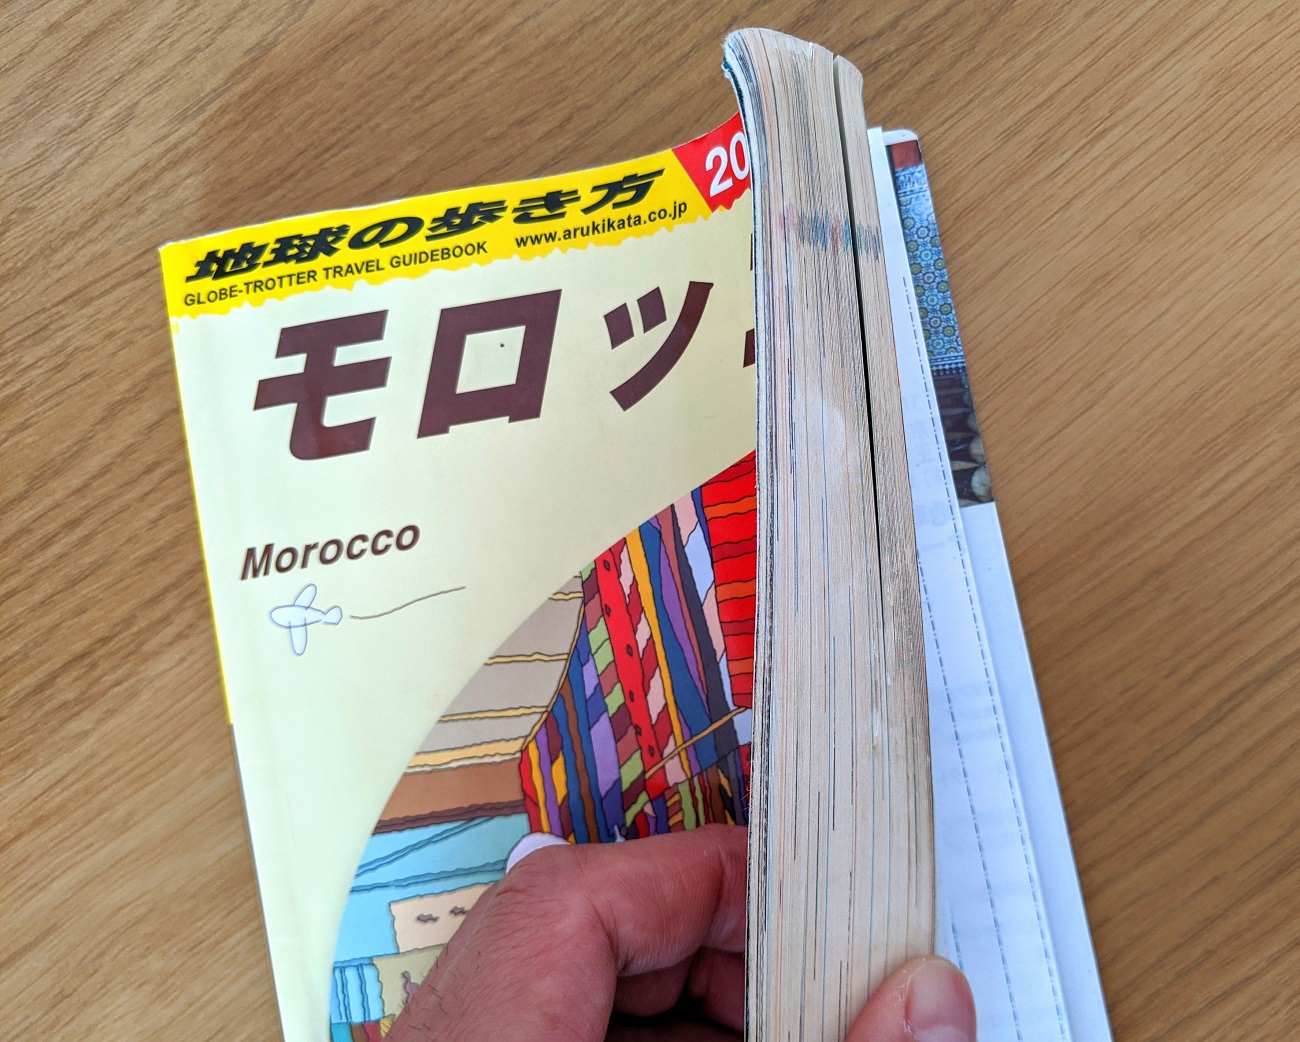 地球の歩き方 シリーズ初の国内版 東京 を読んだら今すぐ東京に行きたくなった 全464ページって辞書かよ ロケットニュース24